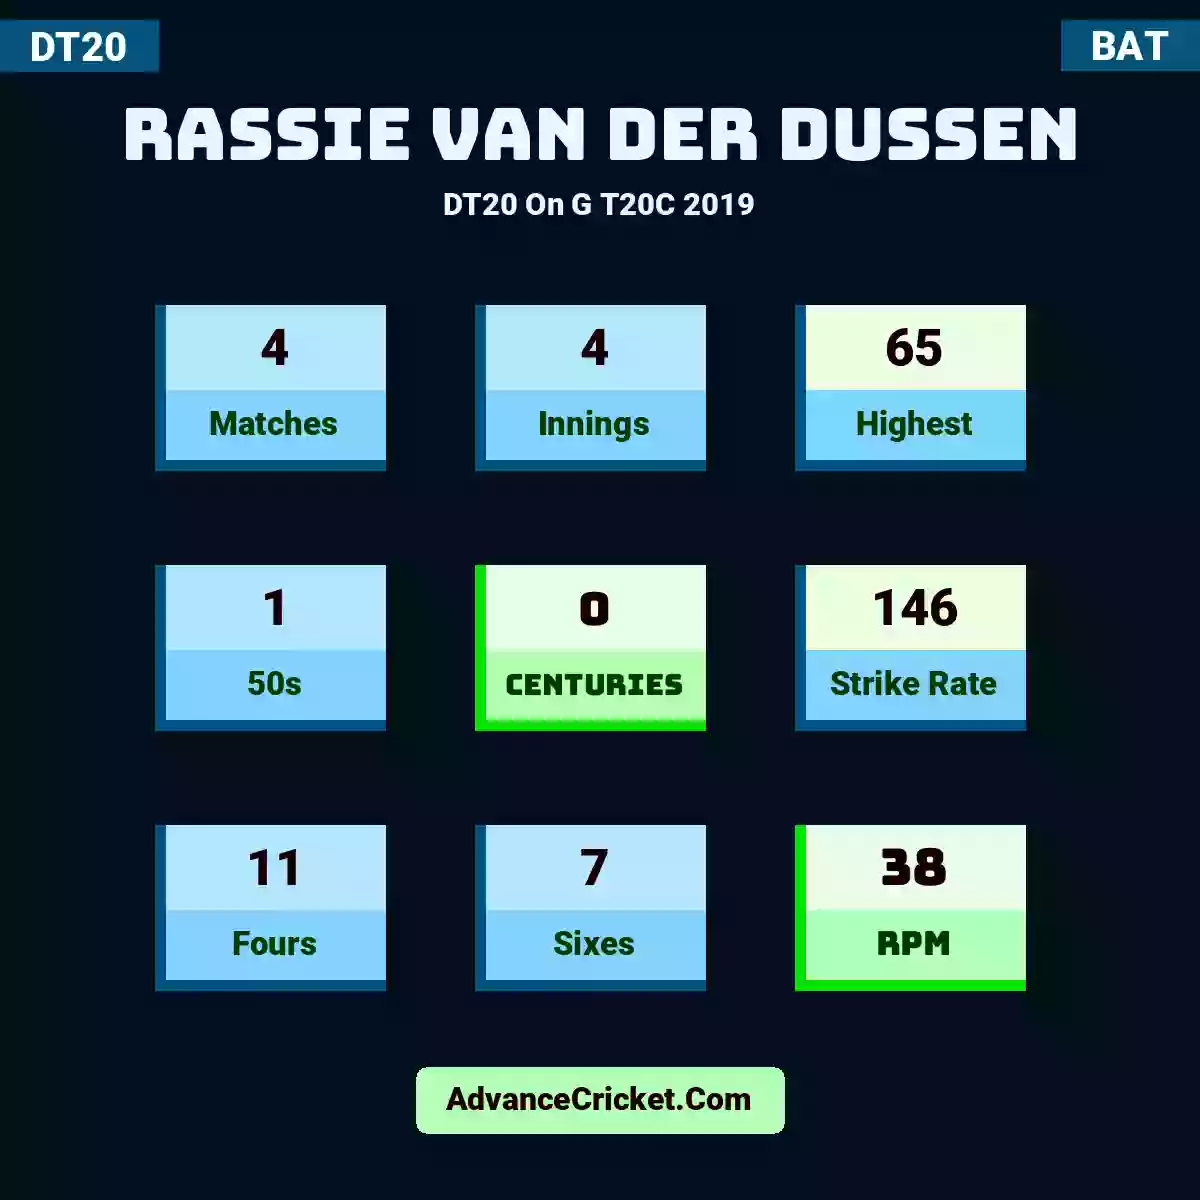 Rassie van der Dussen DT20  On G T20C 2019, Rassie van der Dussen played 4 matches, scored 65 runs as highest, 1 half-centuries, and 0 centuries, with a strike rate of 146. R.Dussen hit 11 fours and 7 sixes, with an RPM of 38.